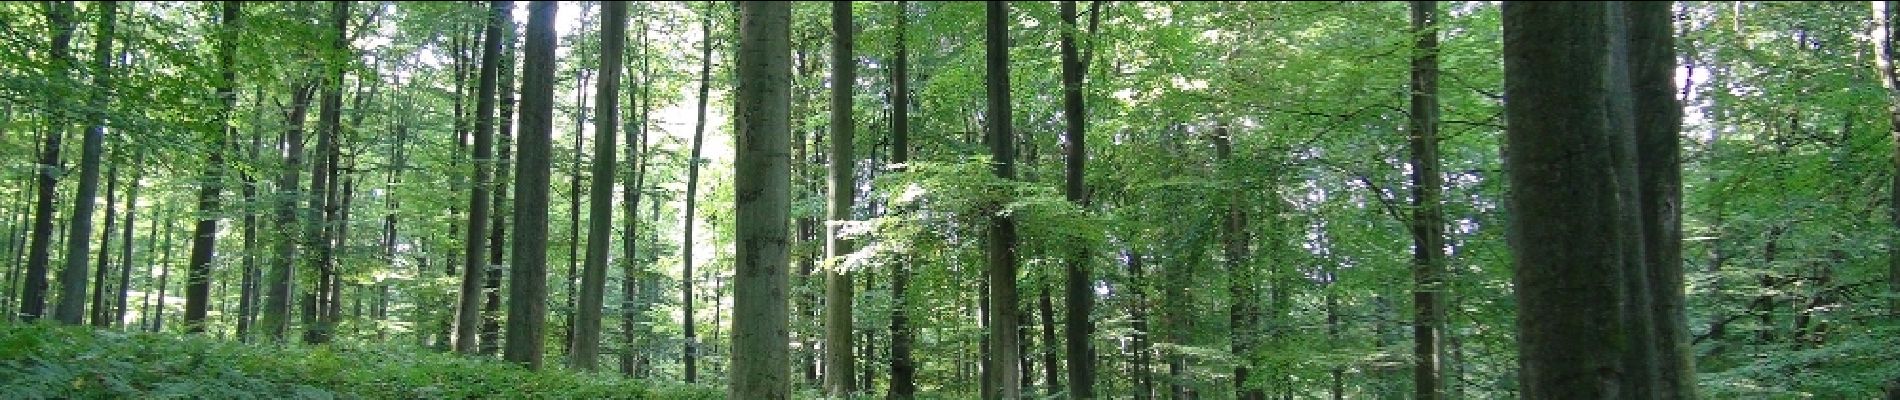 POI Terhulpen - La forêt de Soignes - Photo